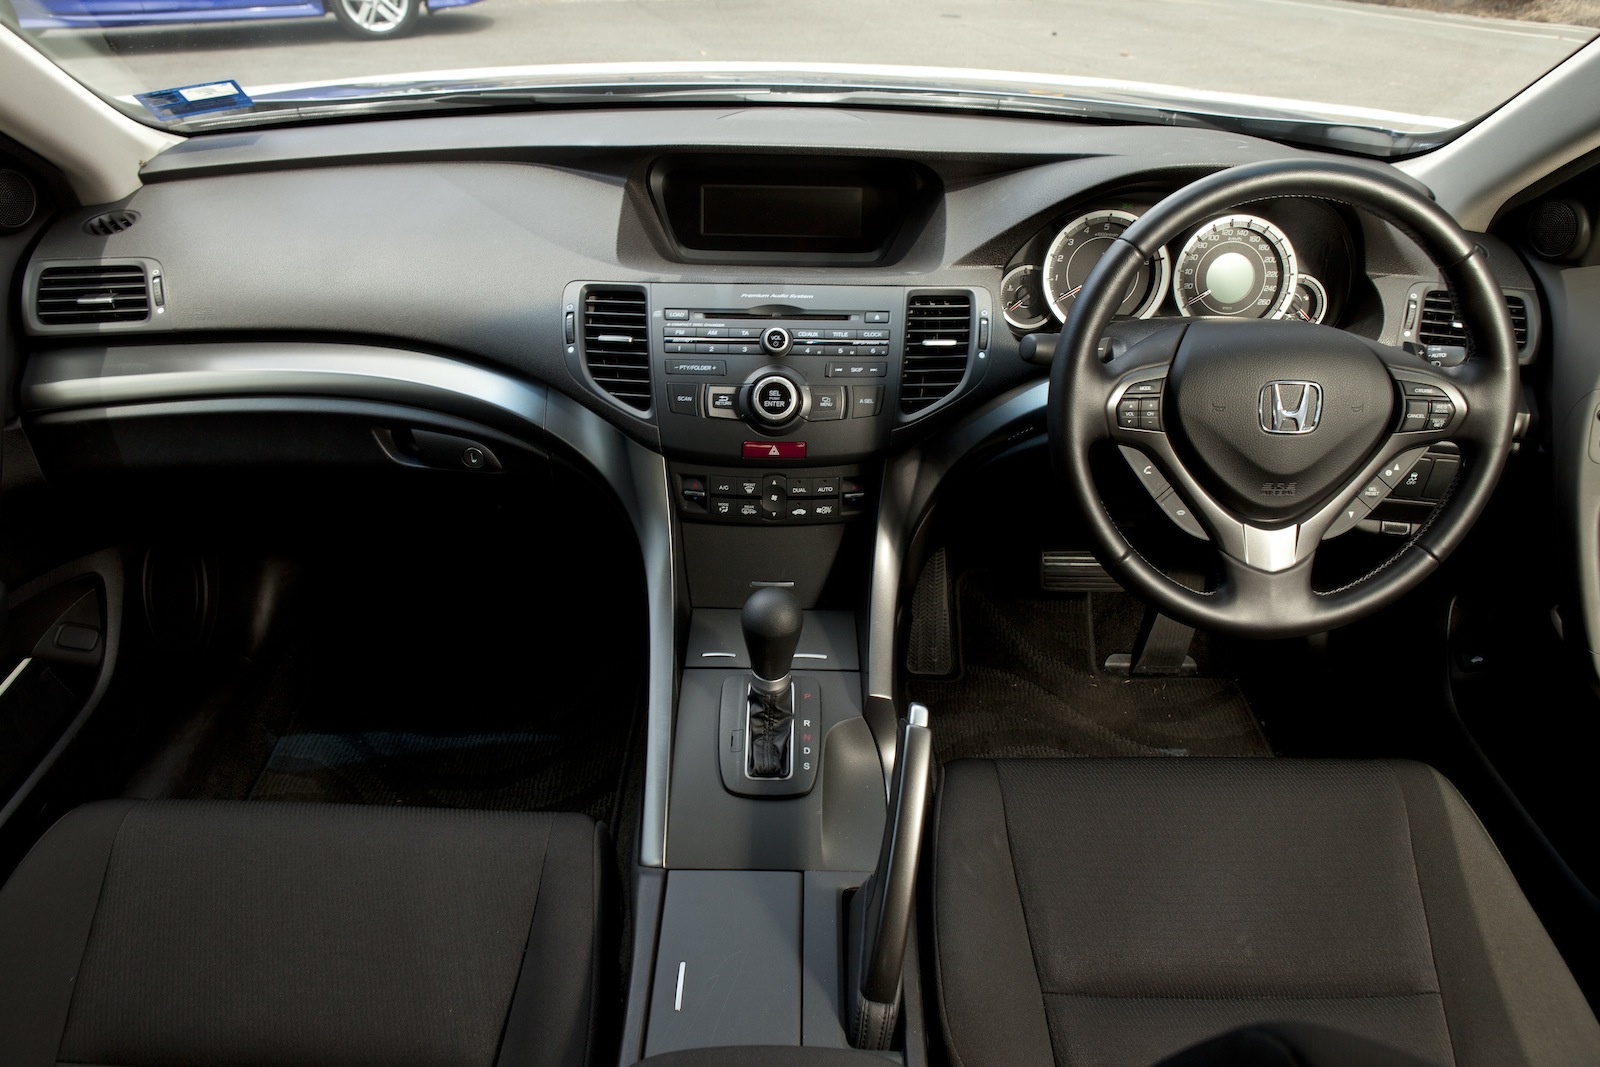  Honda  Accord Euro Review photos CarAdvice